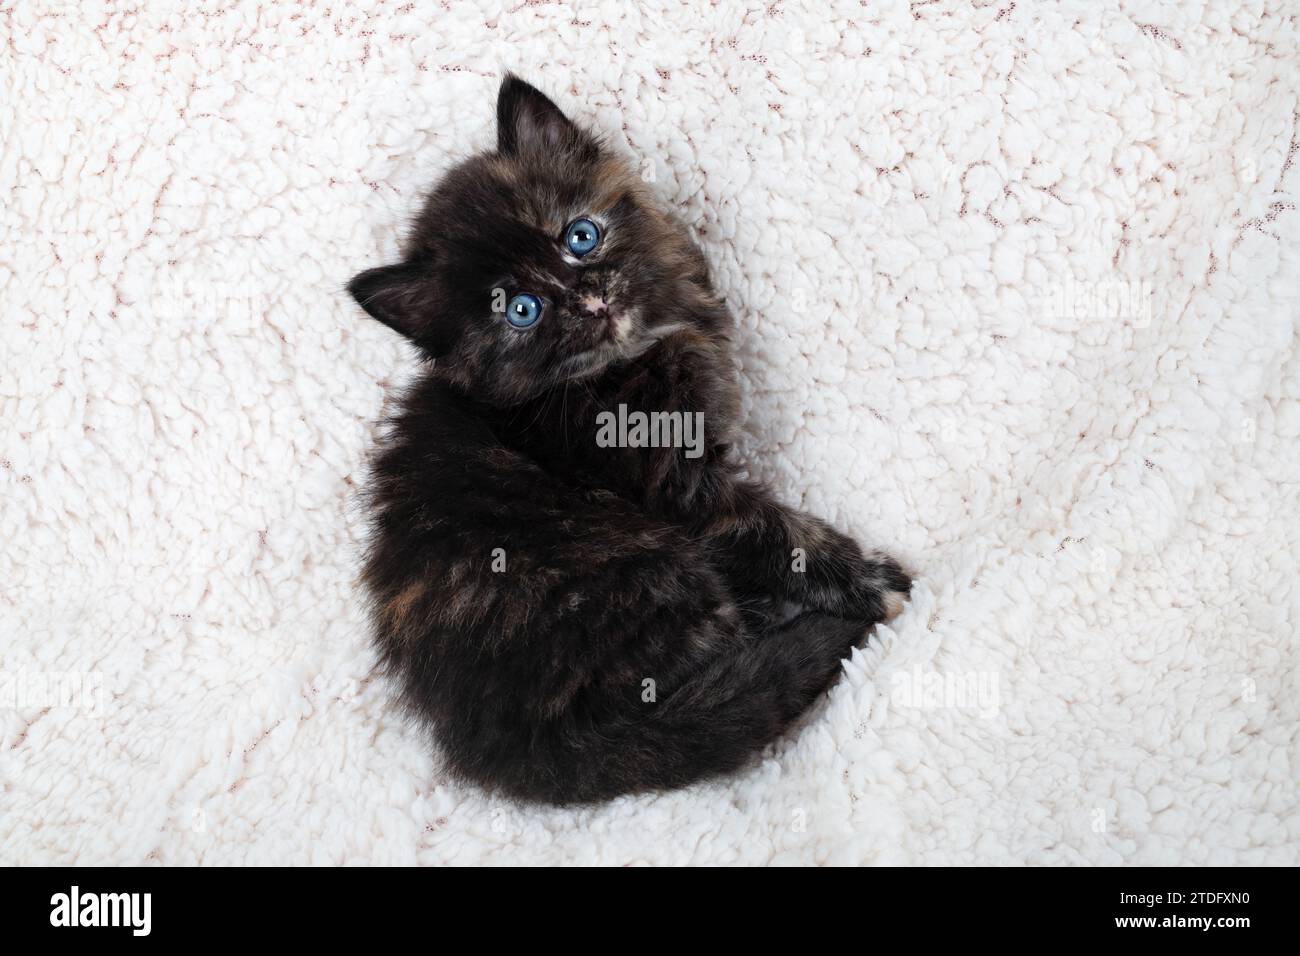 Tiny tortoiseshell kitten looking up on fluffy sheet. Stock Photo